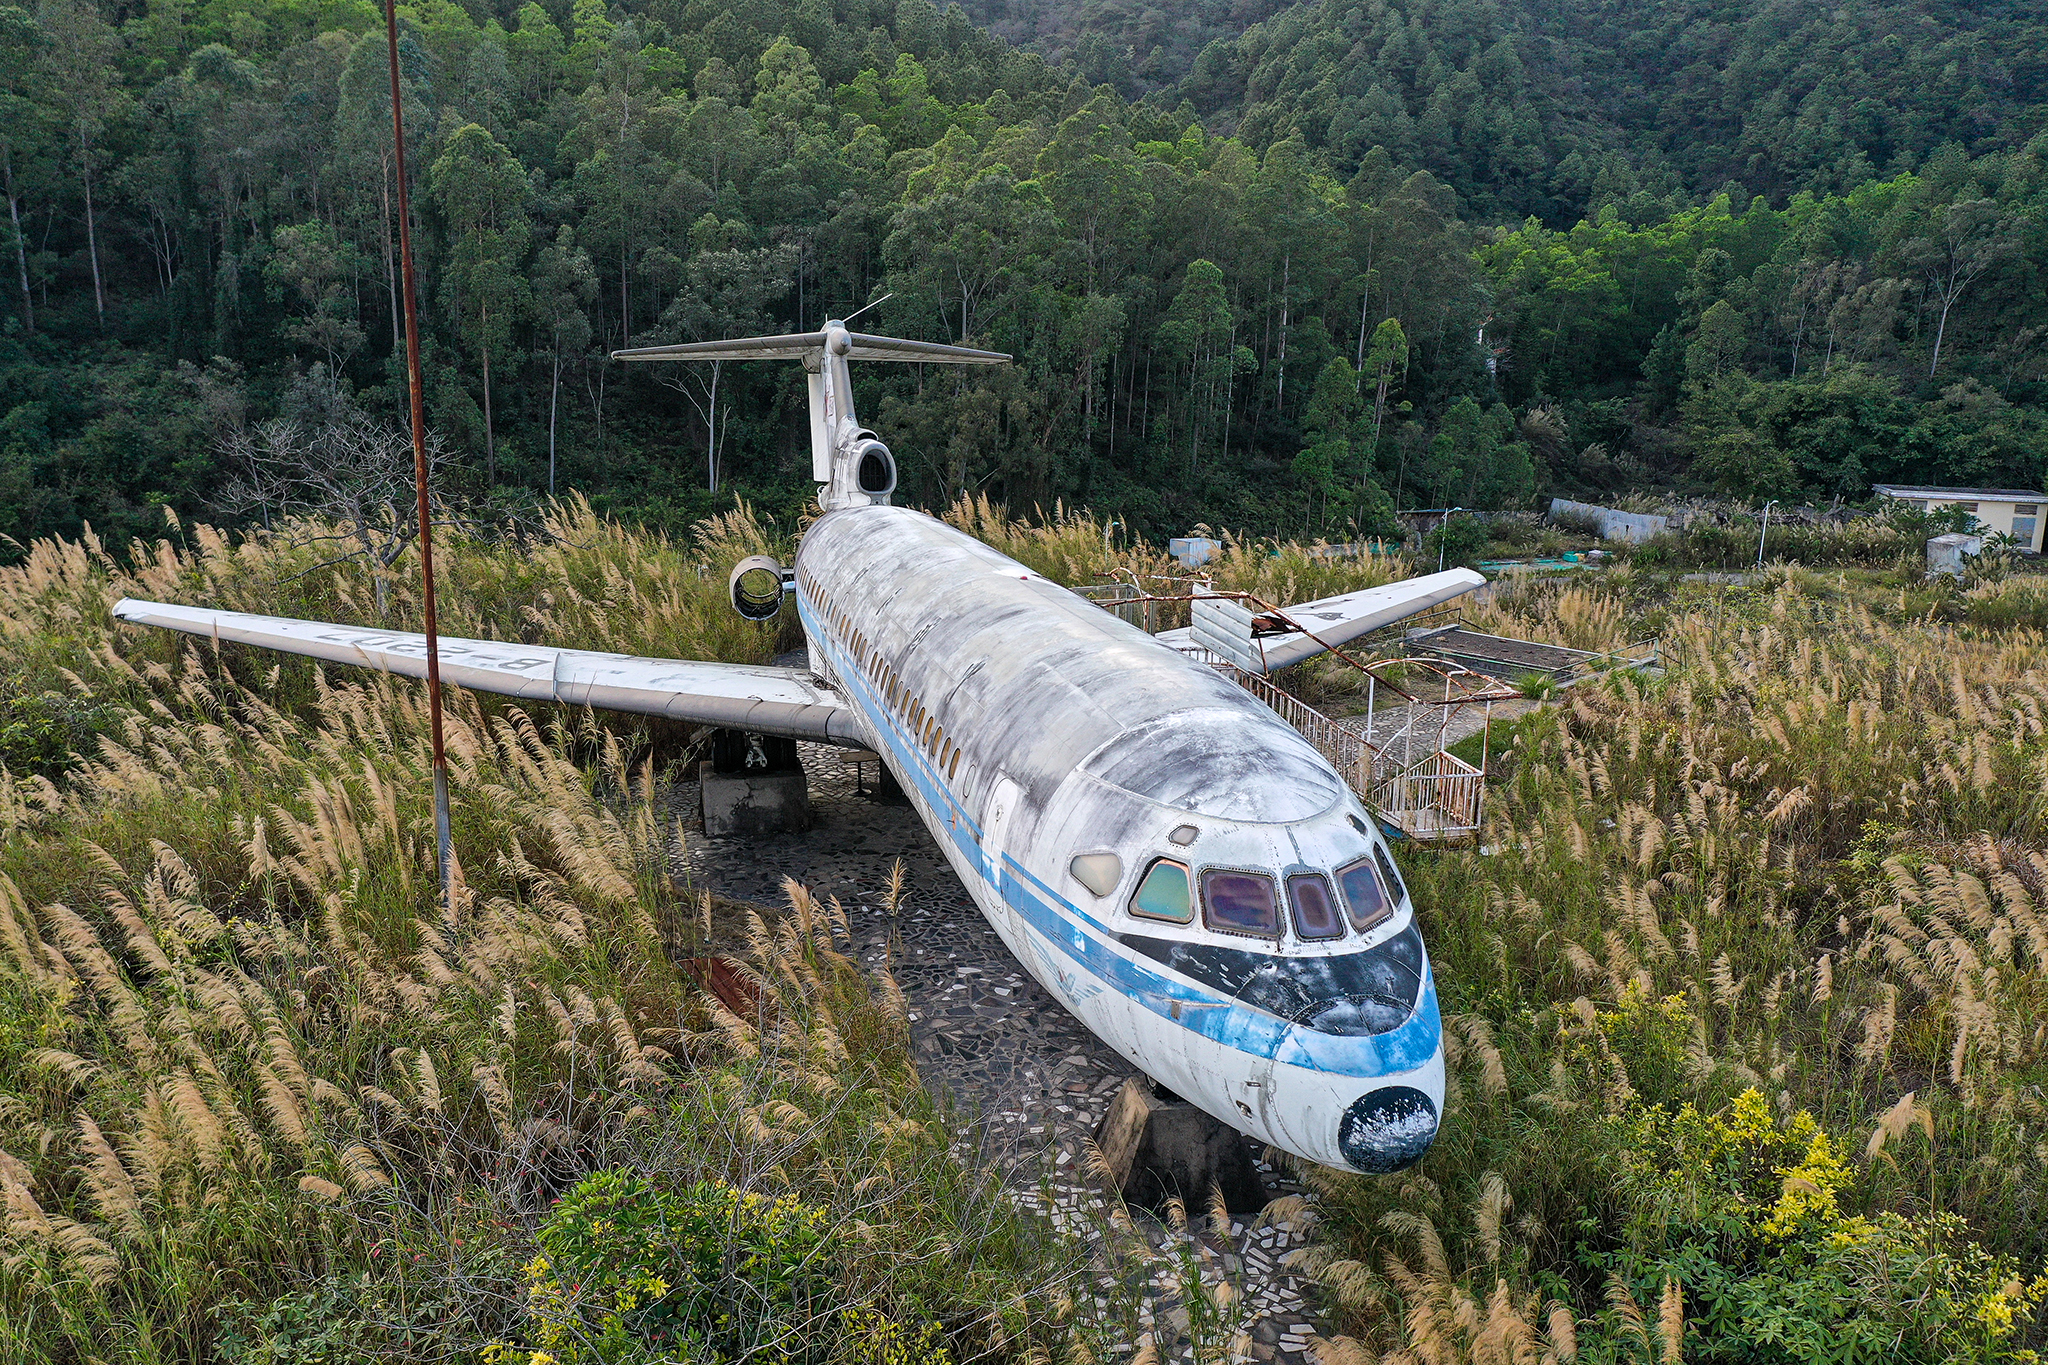 De centrales eléctricas a aviones abandonados: este es otro lado de China |  La fotografia